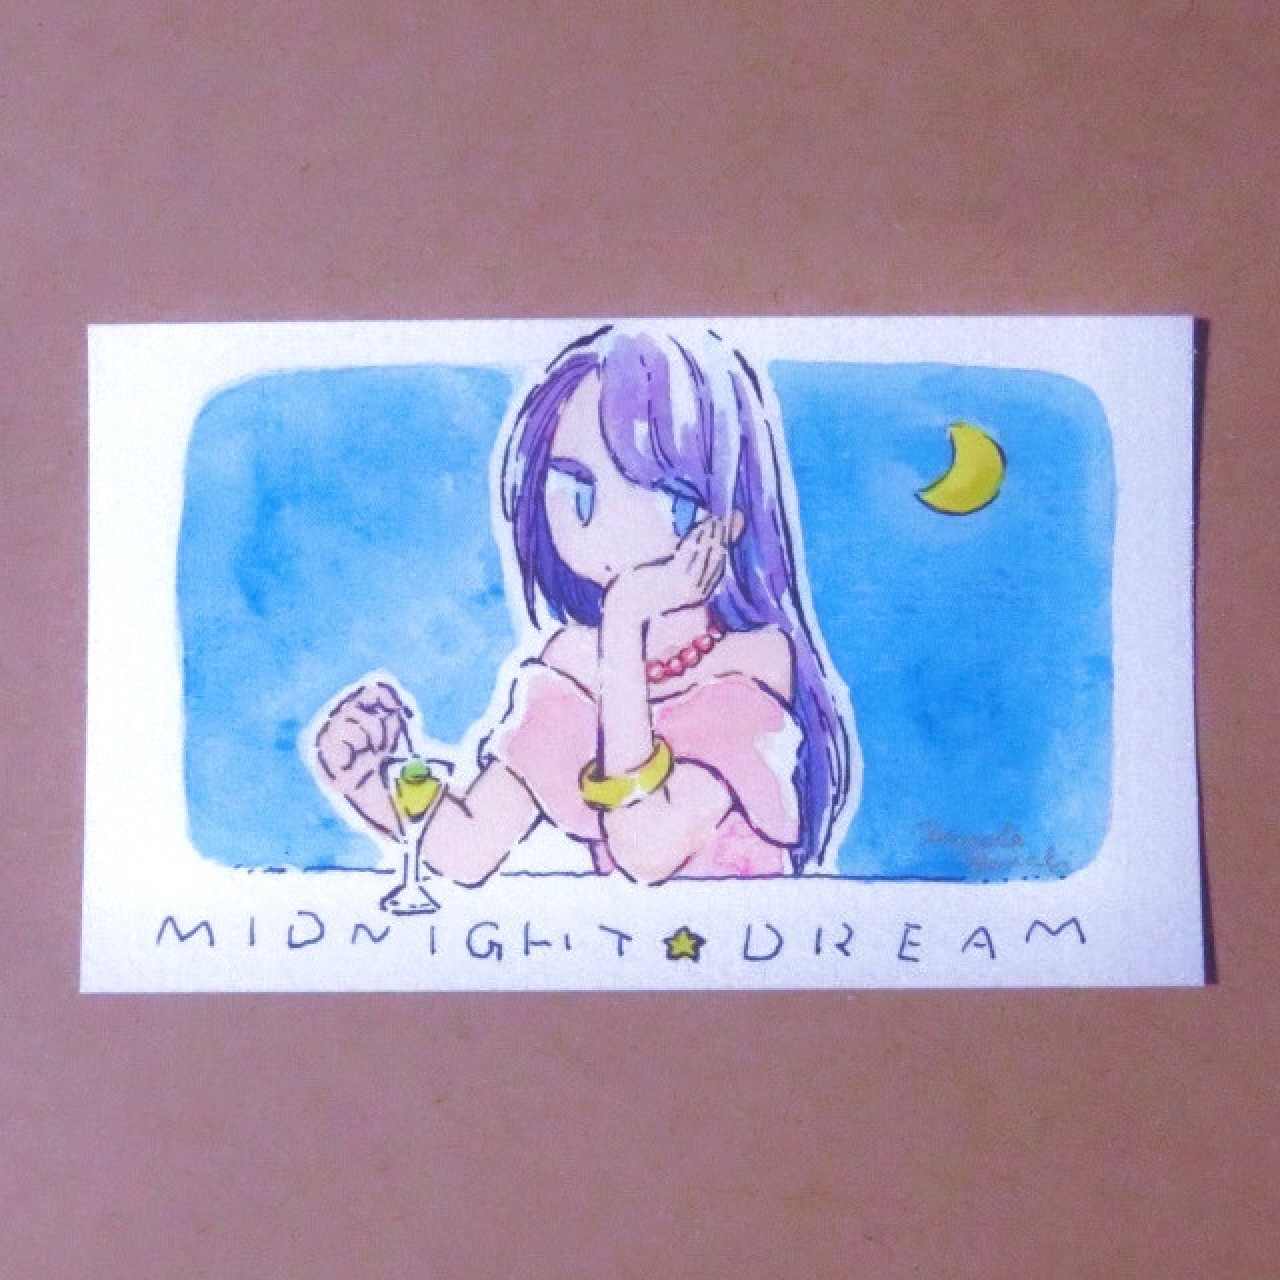 名刺サイズ原画【MIDNIGHT DREAM】